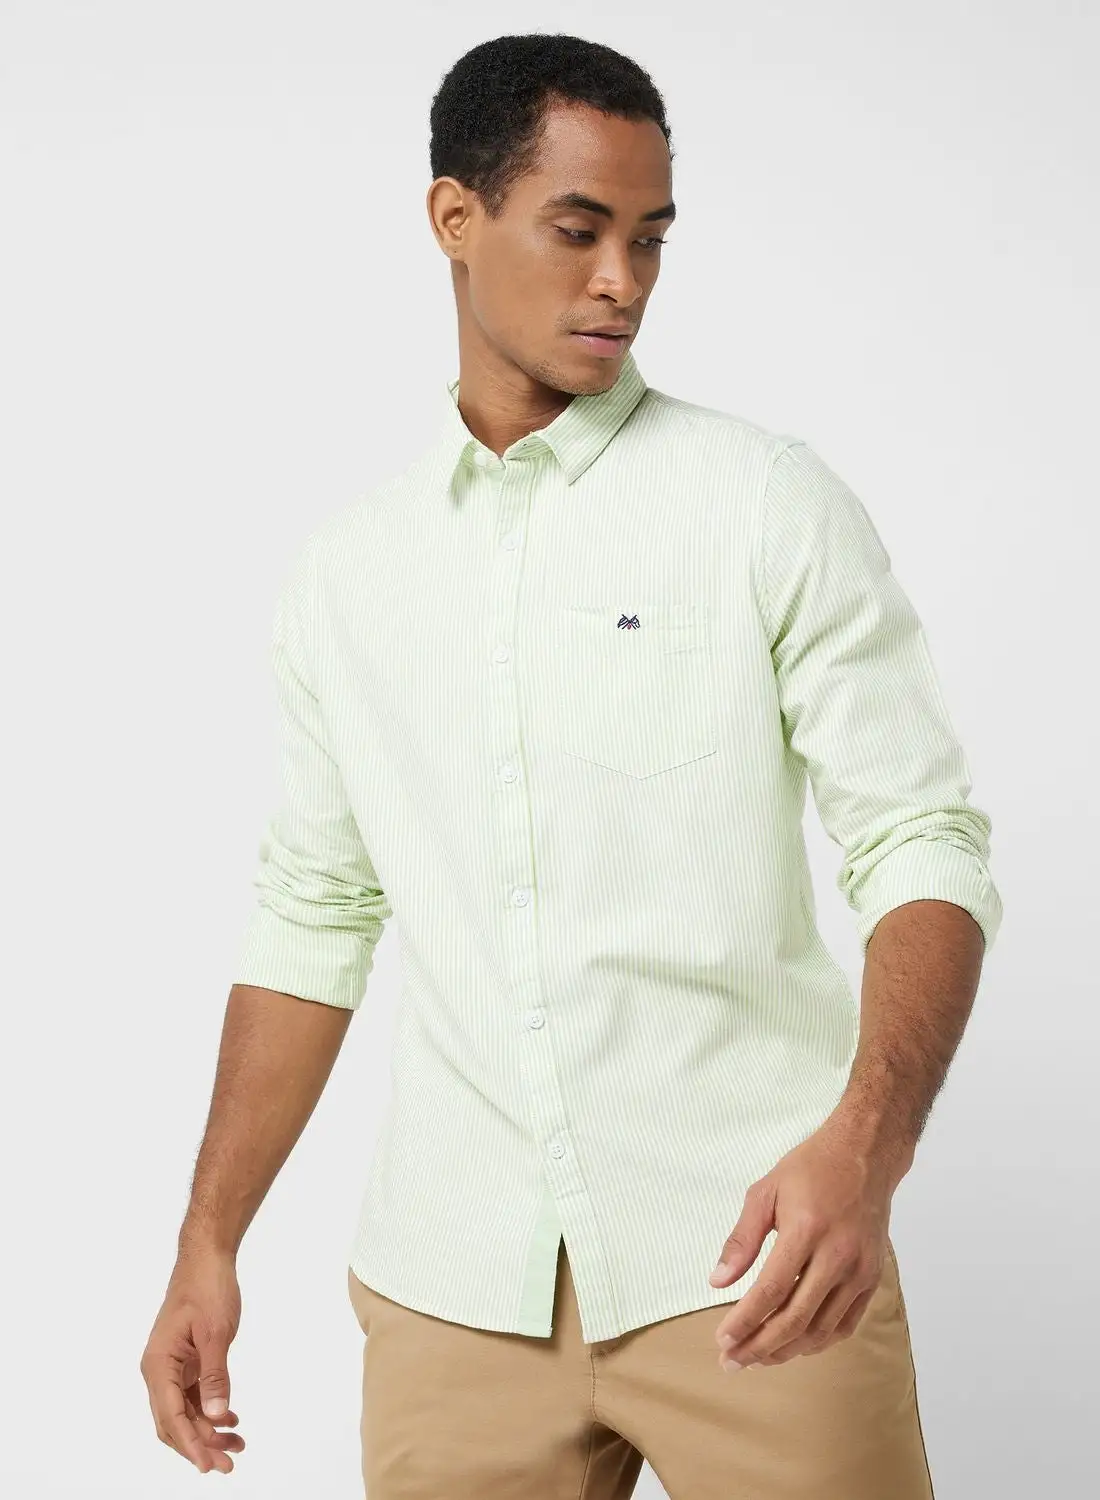 قميص توماس سكوت توماس سكوت الرجالي ذو اللون الأخضر الزيتوني الذكي ذو المقاس النحيف غير الشفاف